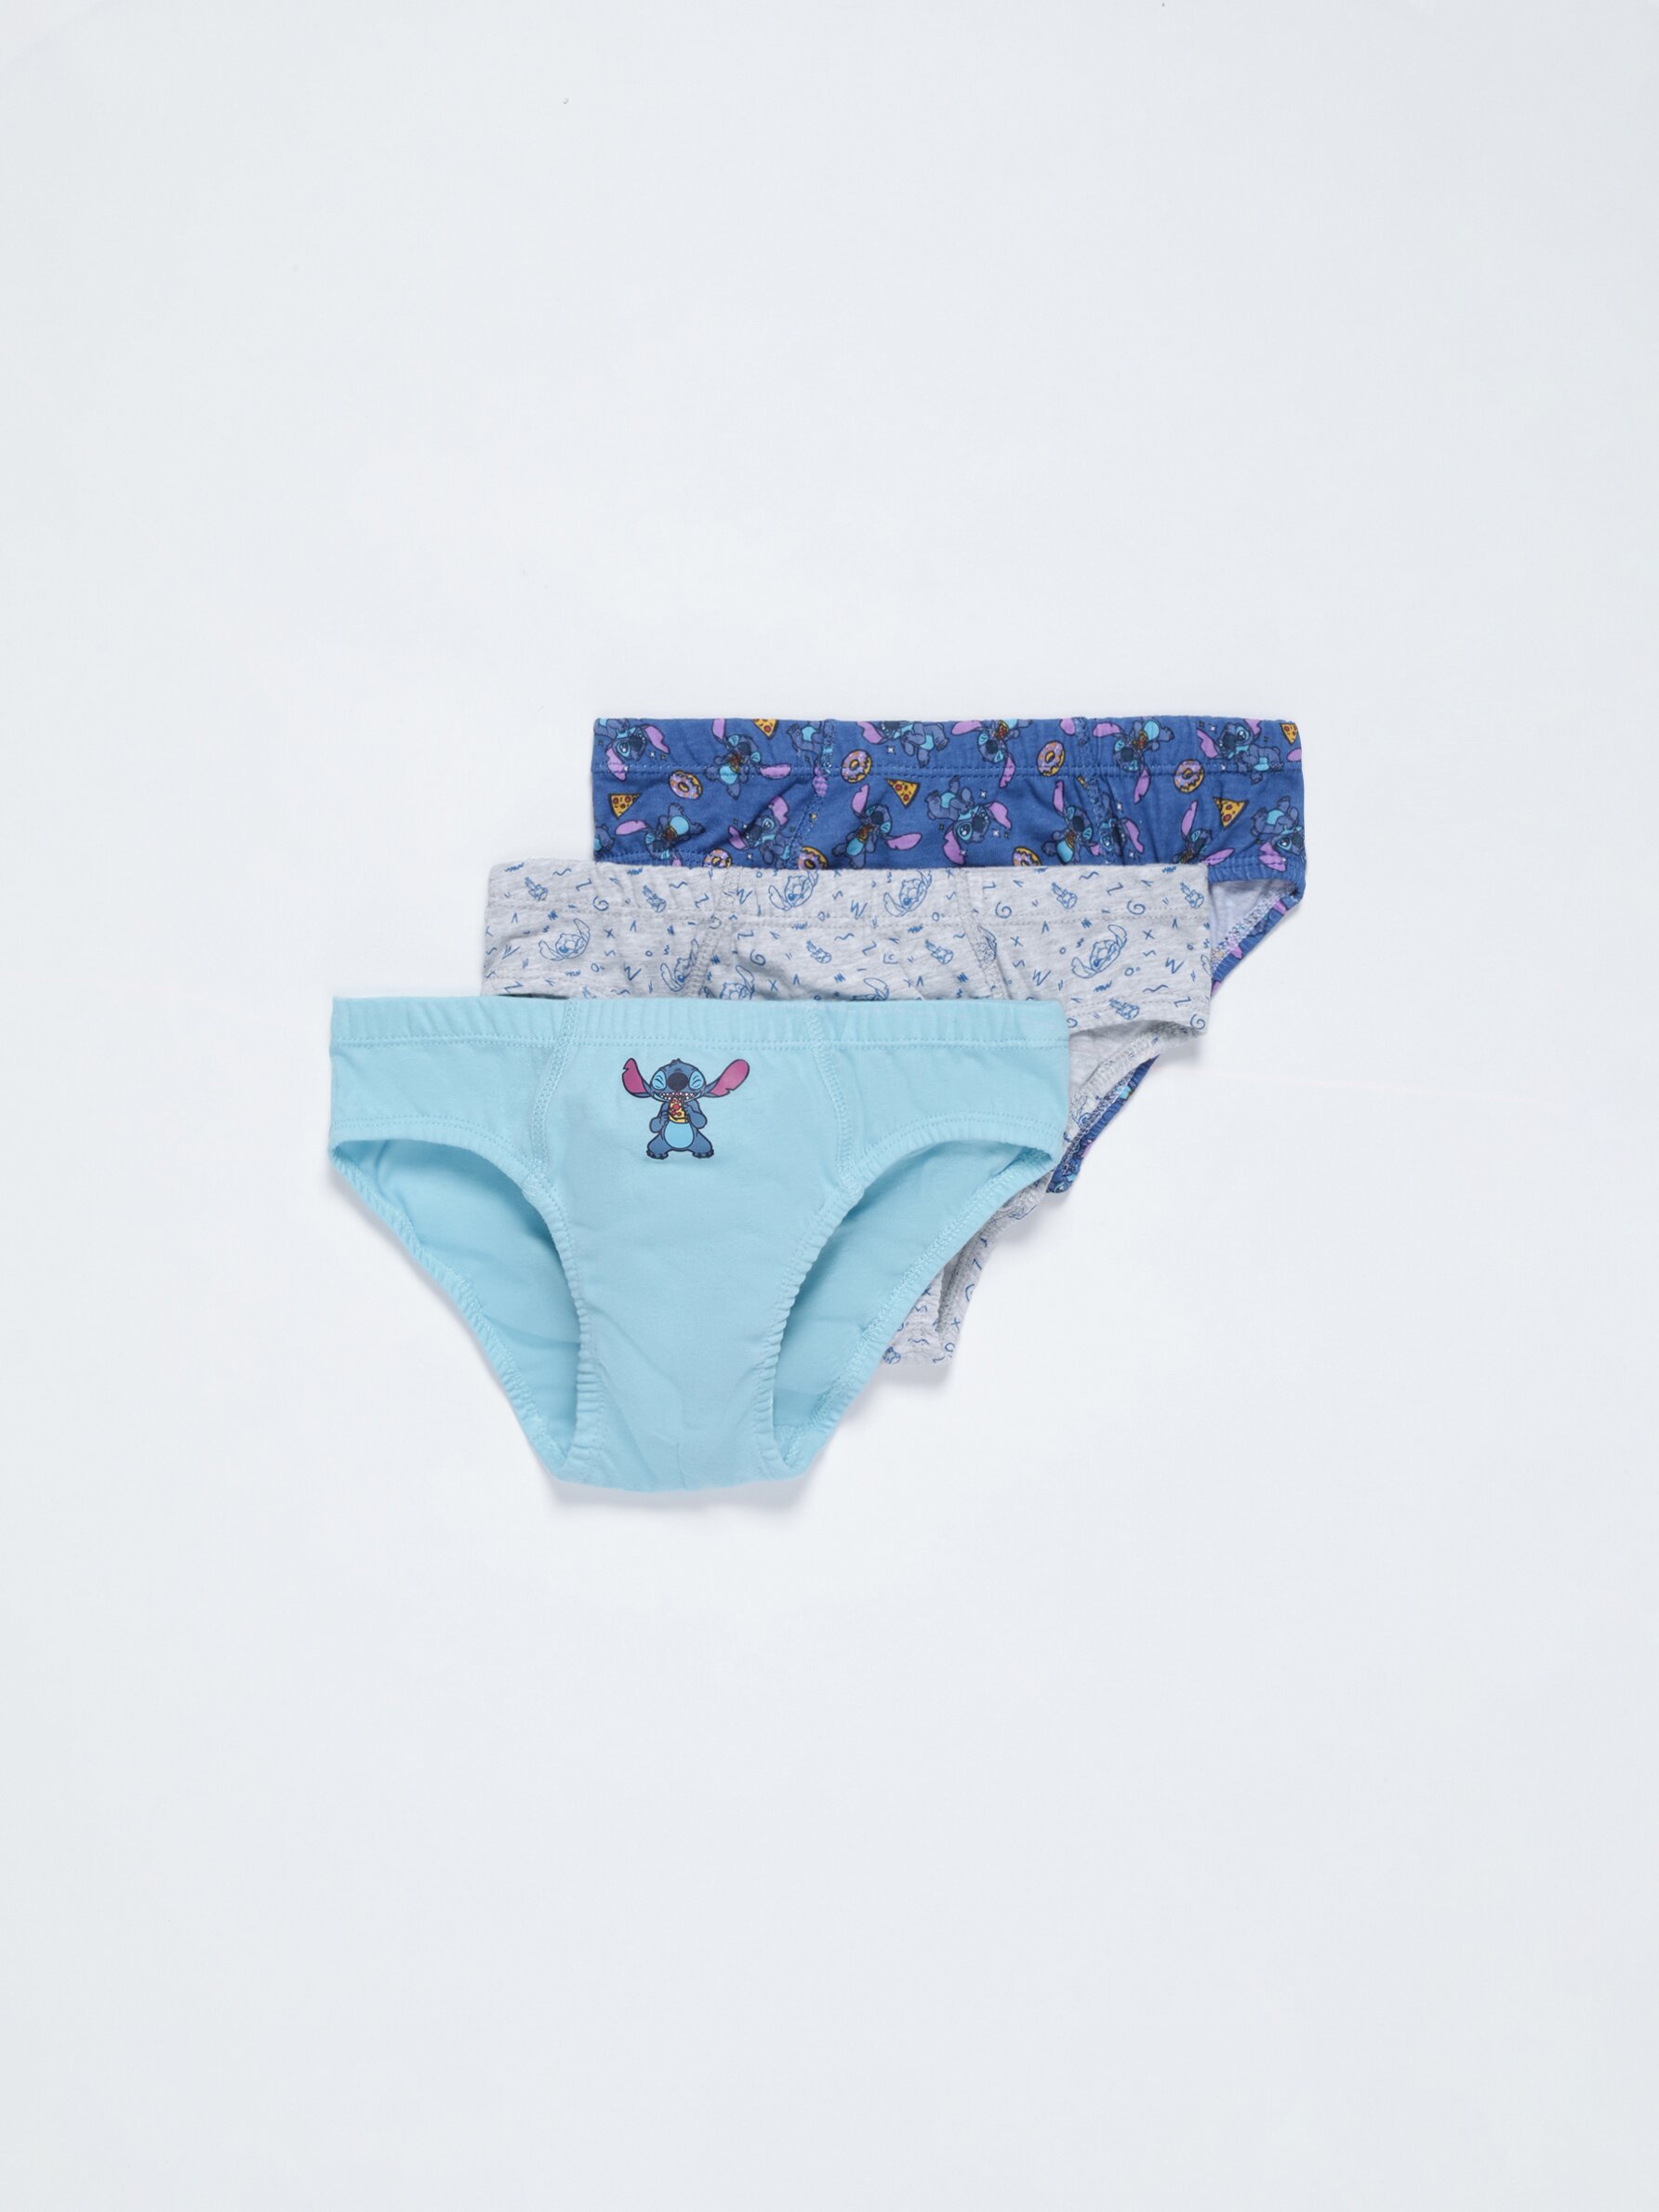 Disney Frozen 3-in-1 Pack Bikini Panty Girls Kids Underwear